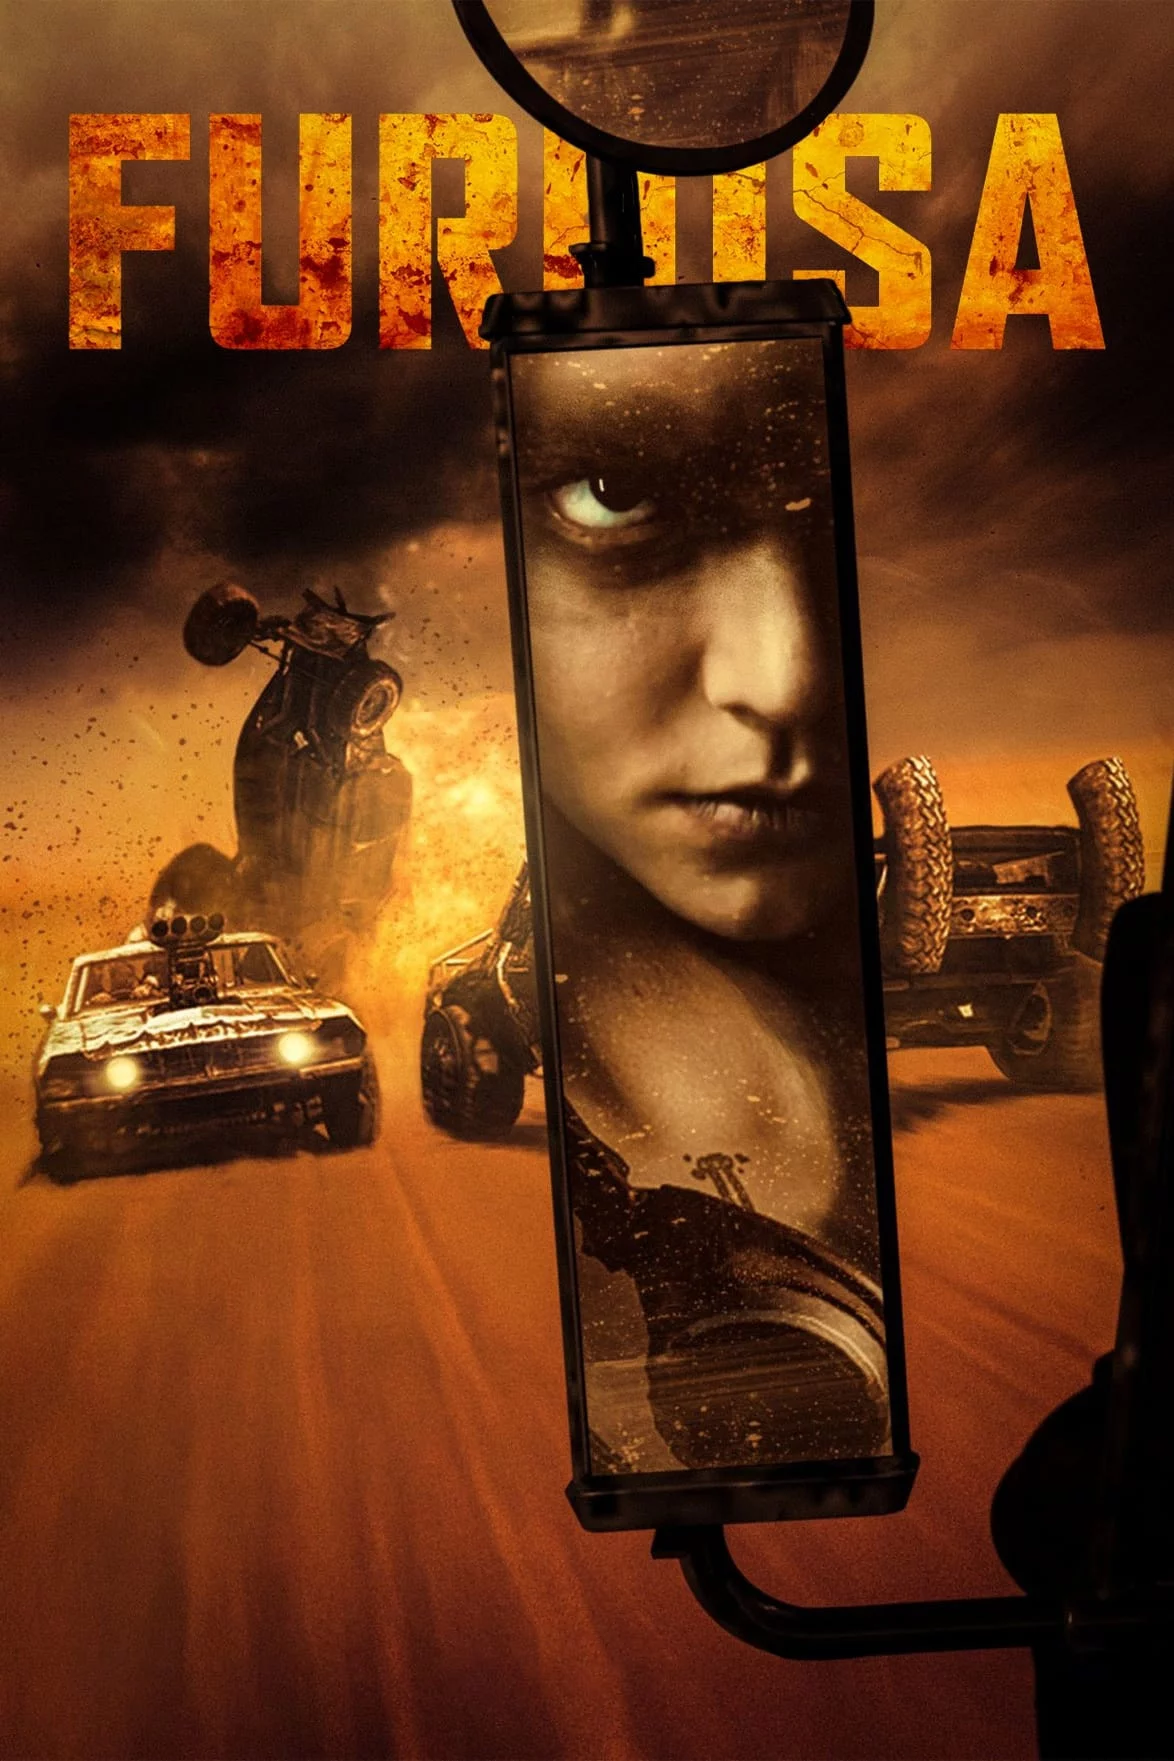 Photo du film : Furiosa: une saga Mad Max